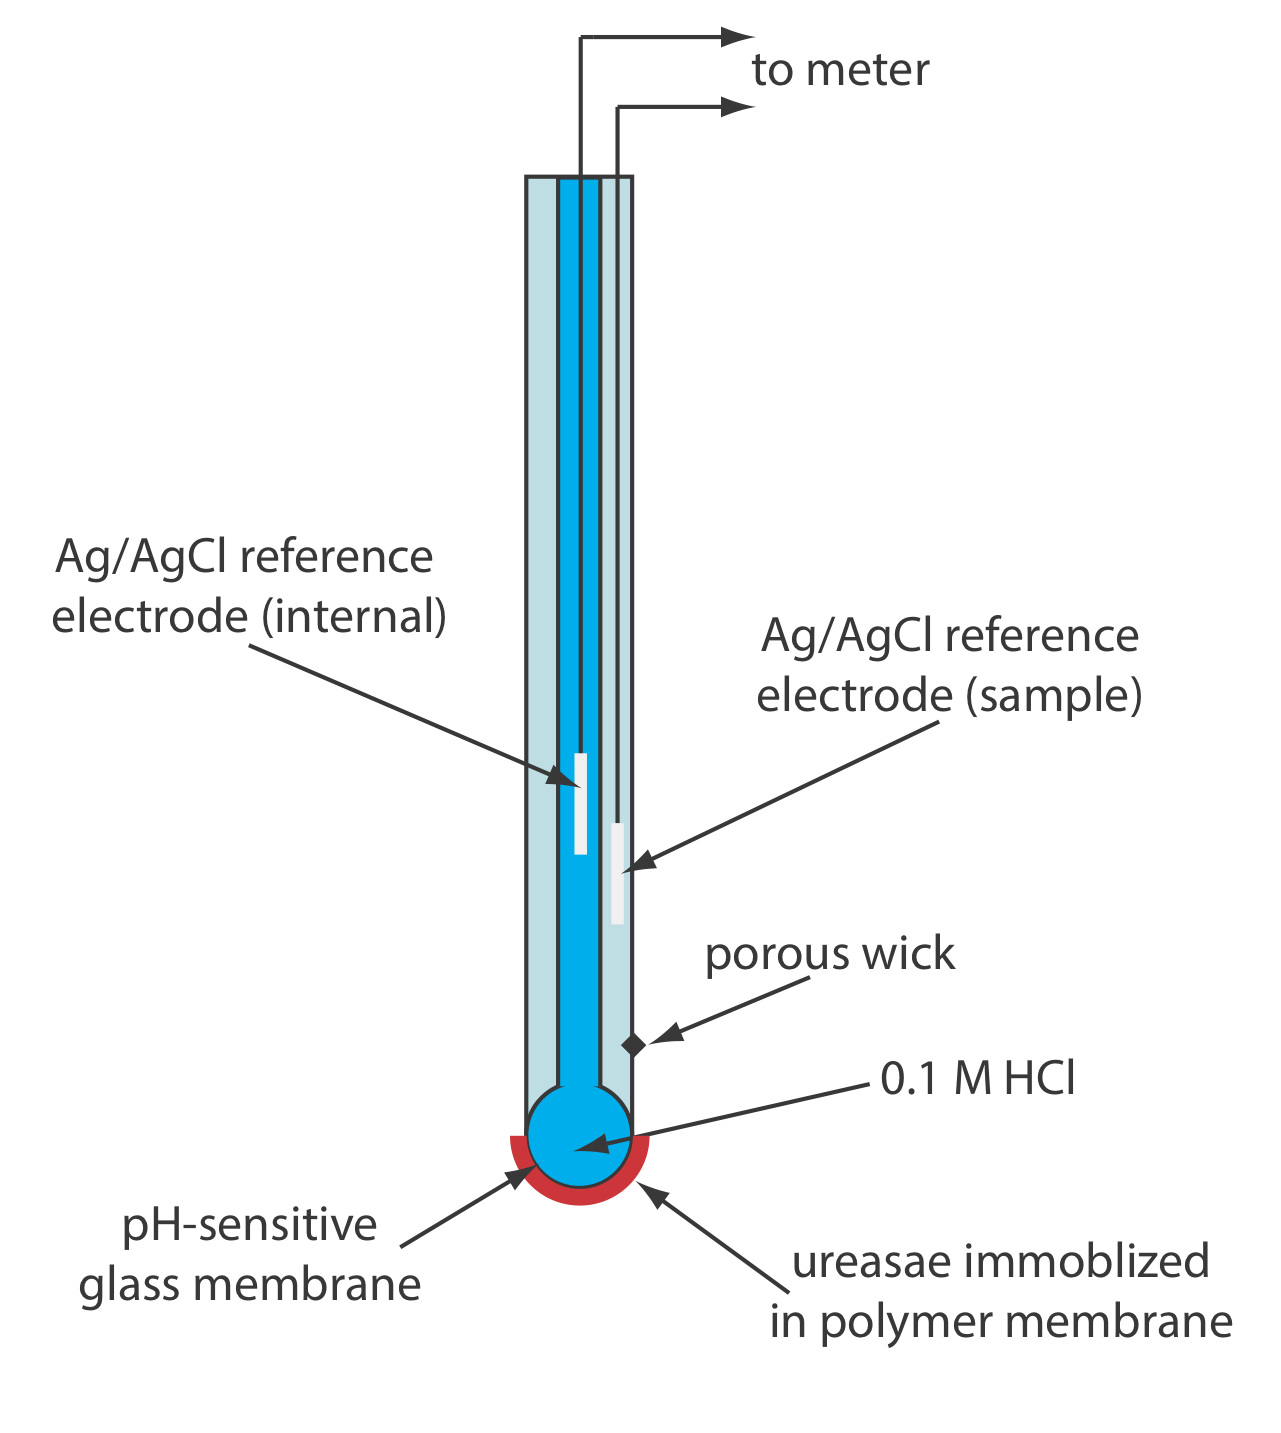 El biosensor para urea consiste en una membrana de vidrio sensible al pH, ureasa inmovilizada en membrana polimérica, HCl 0.1M, una mecha porosa, electrodo de referencia Ag/AgCl (muestra) y electrodo de referencia Ag/AgCl (interno) y conduce a un medidor.